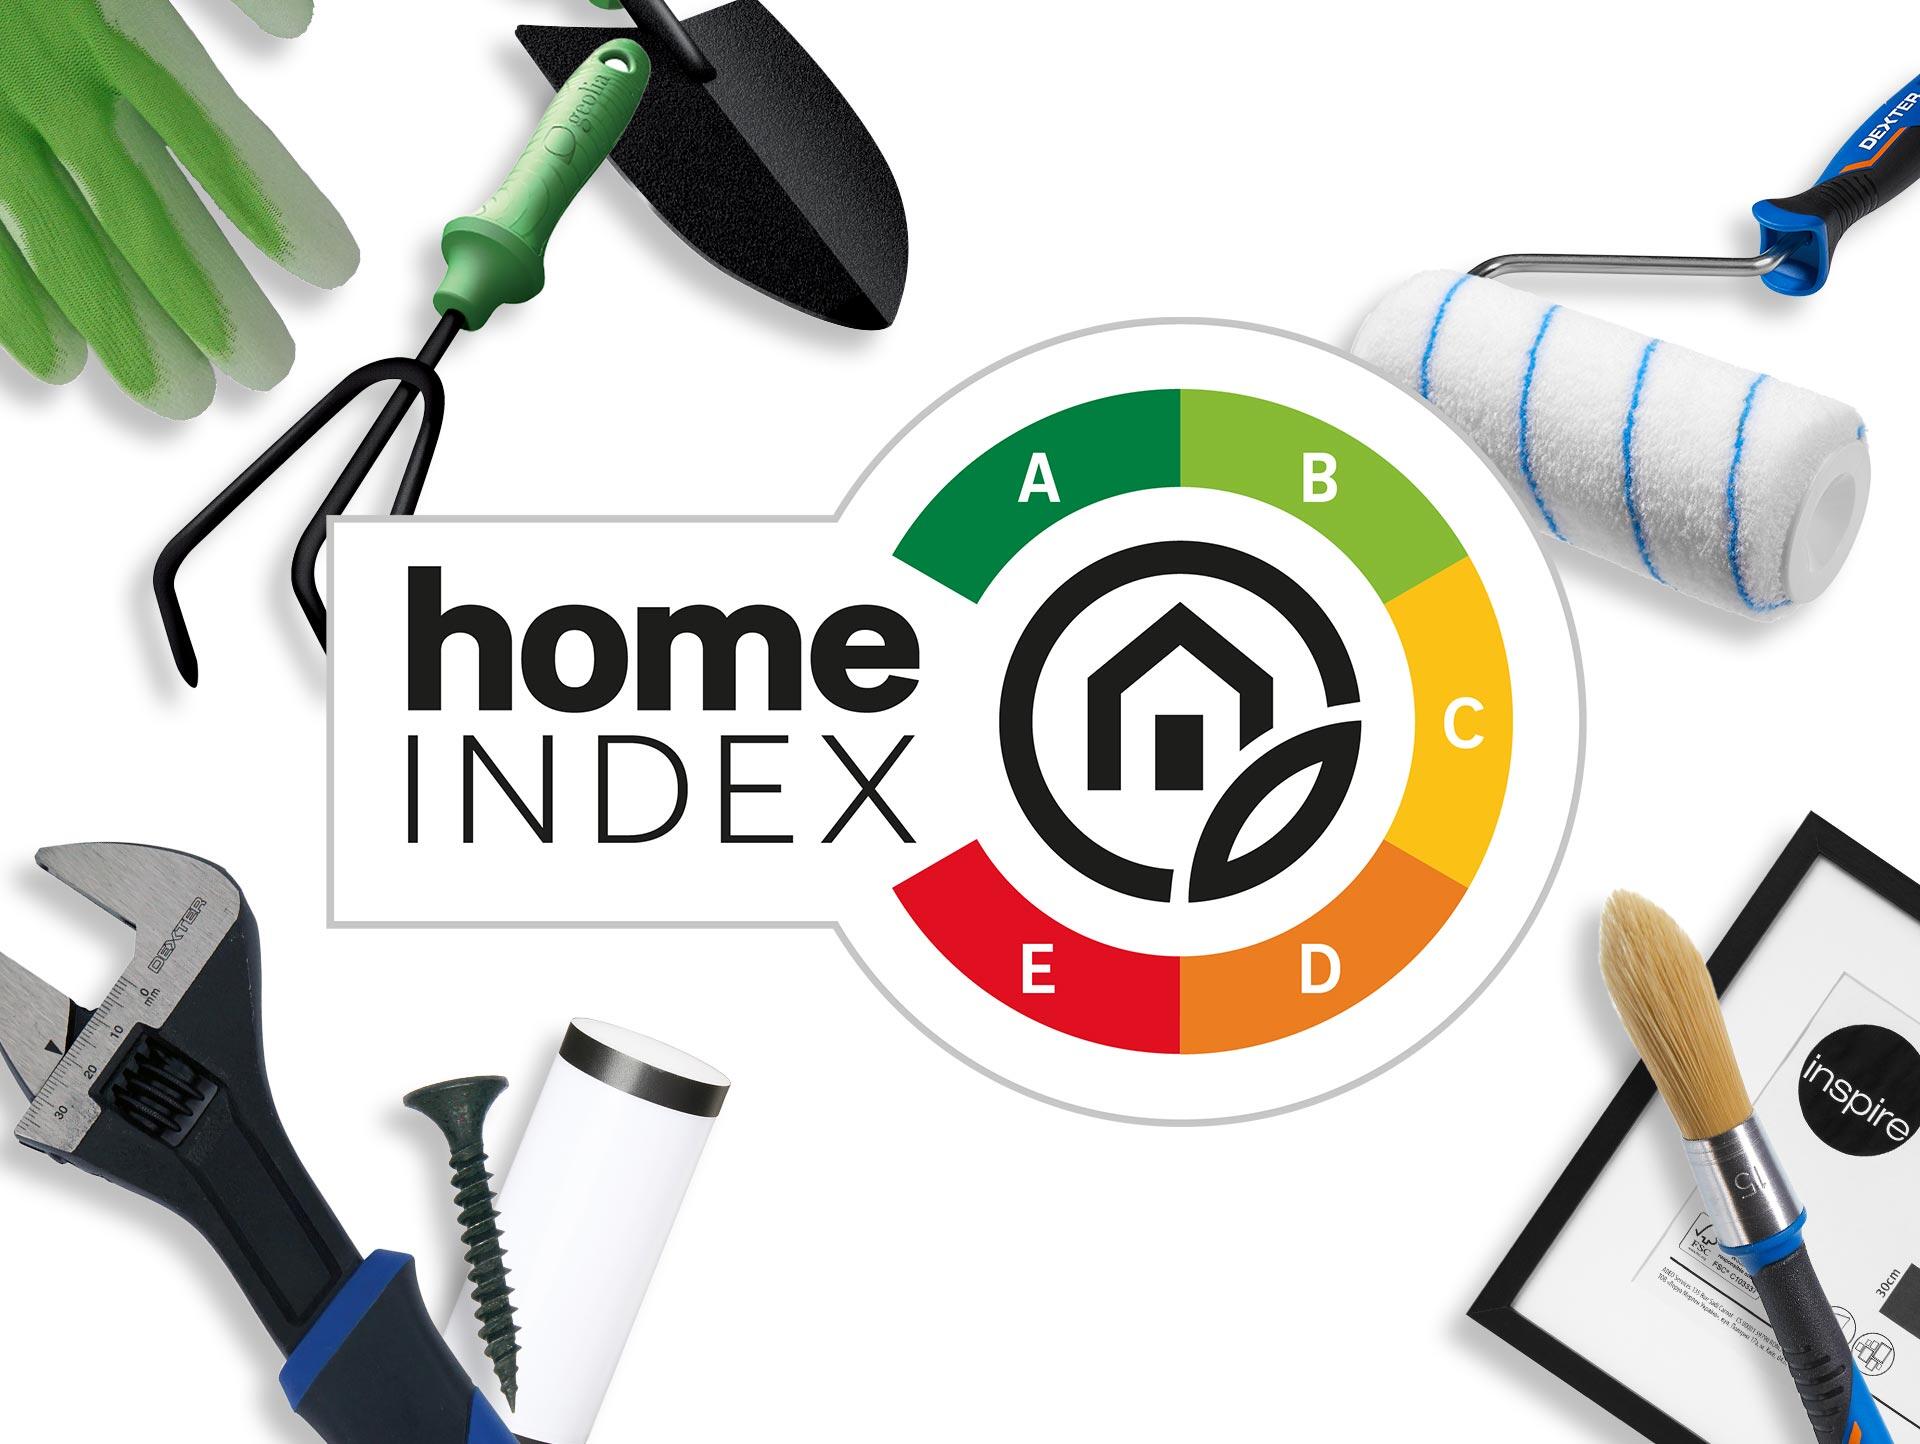 Home Index : notre sélection de produits | Leroy Merlin